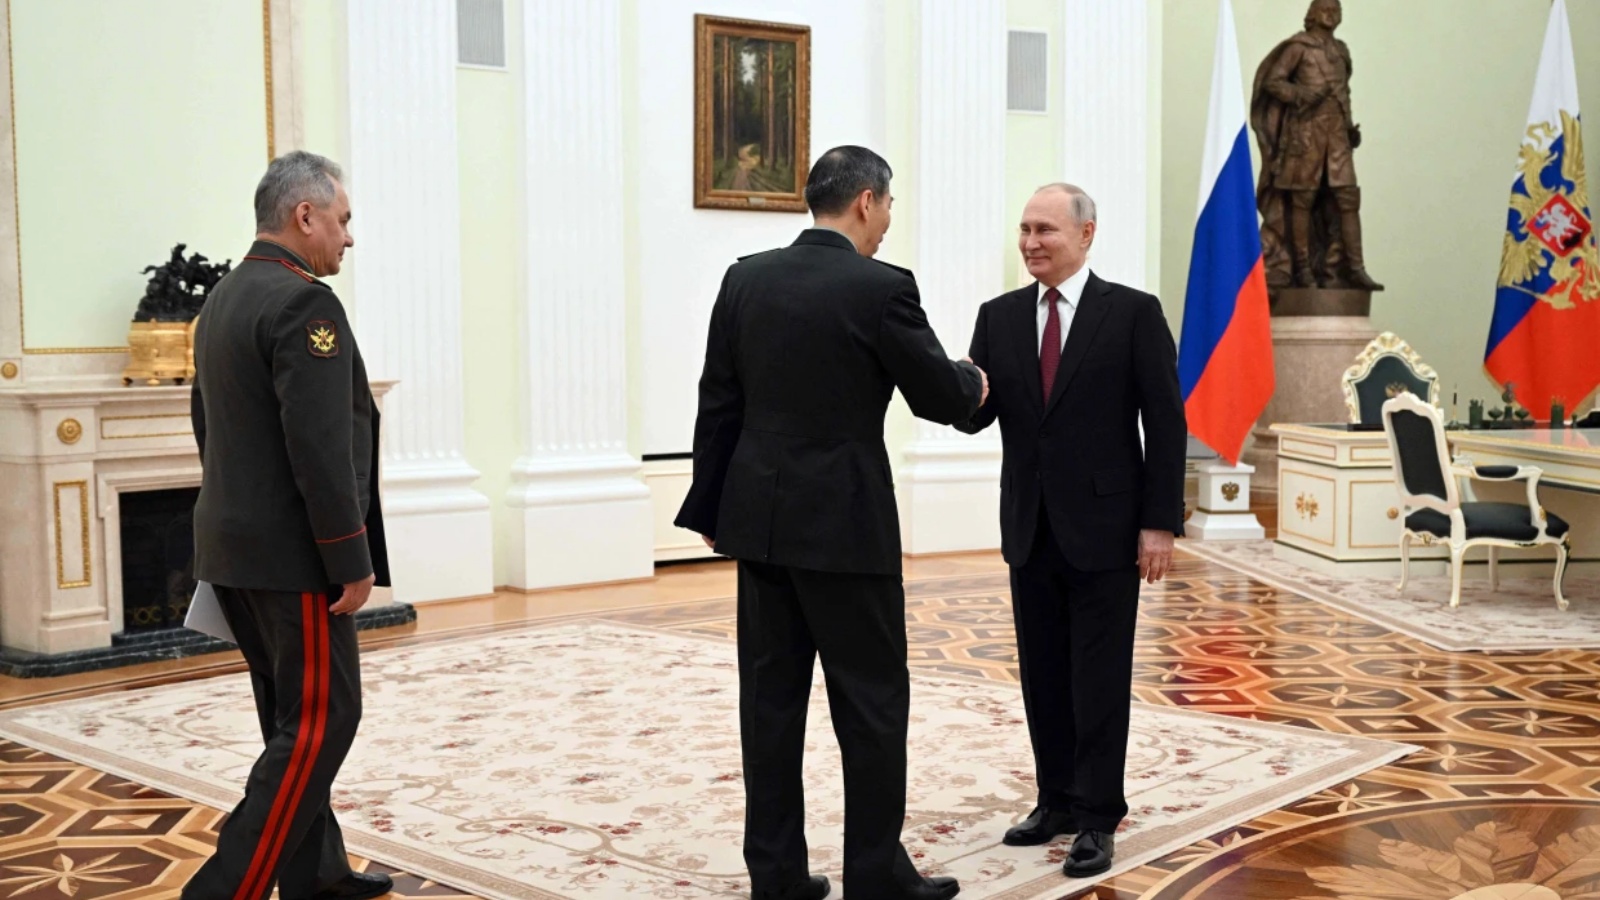 الرئيس الروسي فلاديمير بوتين يحيي وزير الدفاع الصيني ، لي شانغفو ، في الكرملين في موسكو يوم الأحد